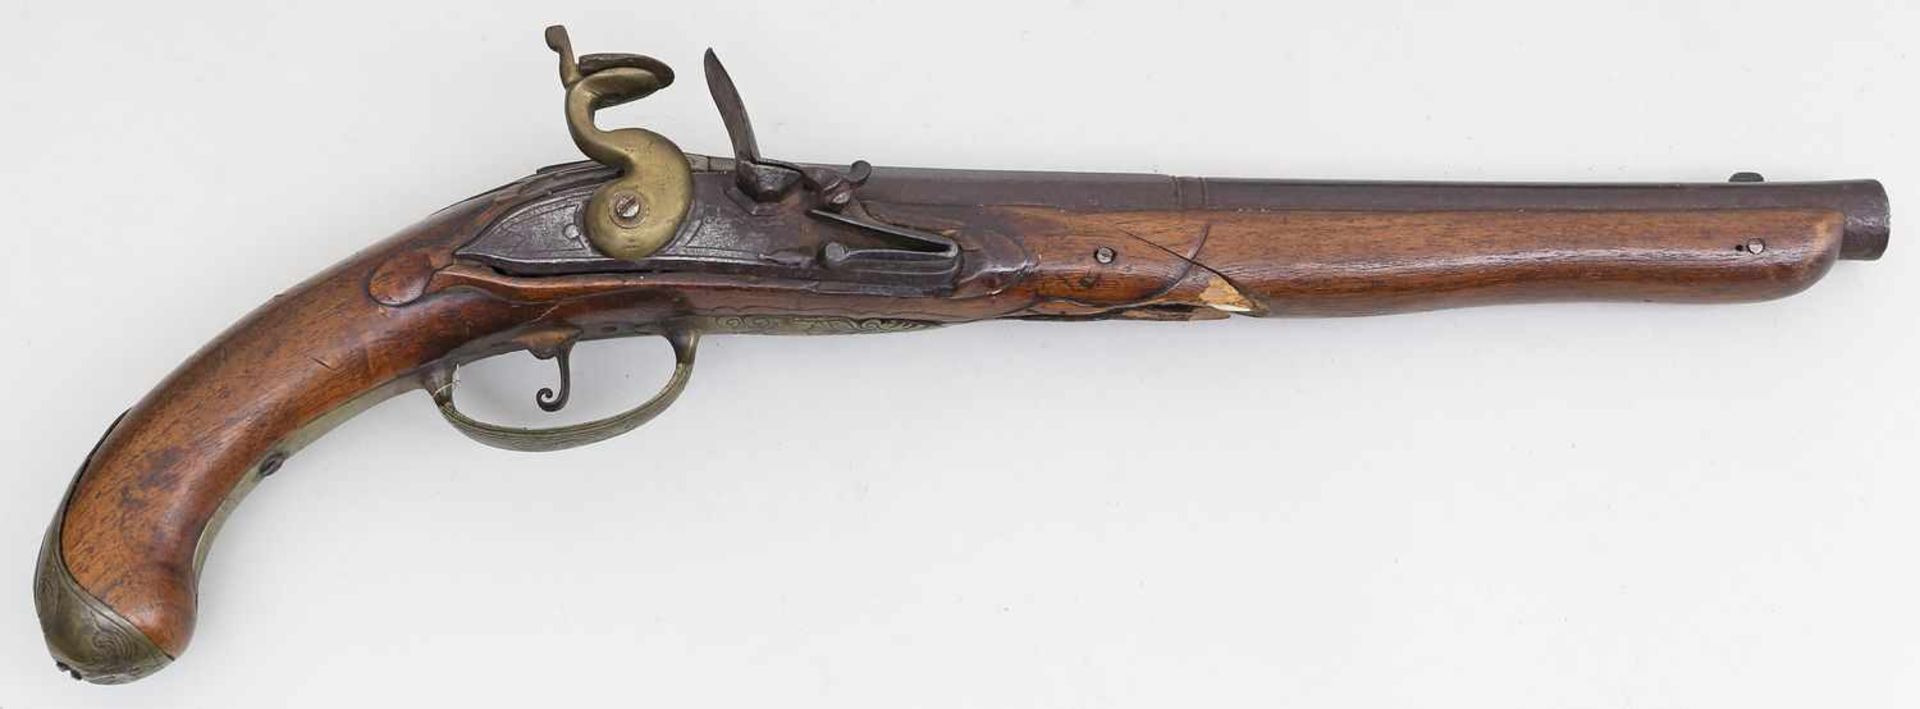 Steinschlosspistole und Gewehr.Eisen/Holzschäfte, stark besch. 19. Jh. L. 42 bzw. 123 cm. - Bild 2 aus 2